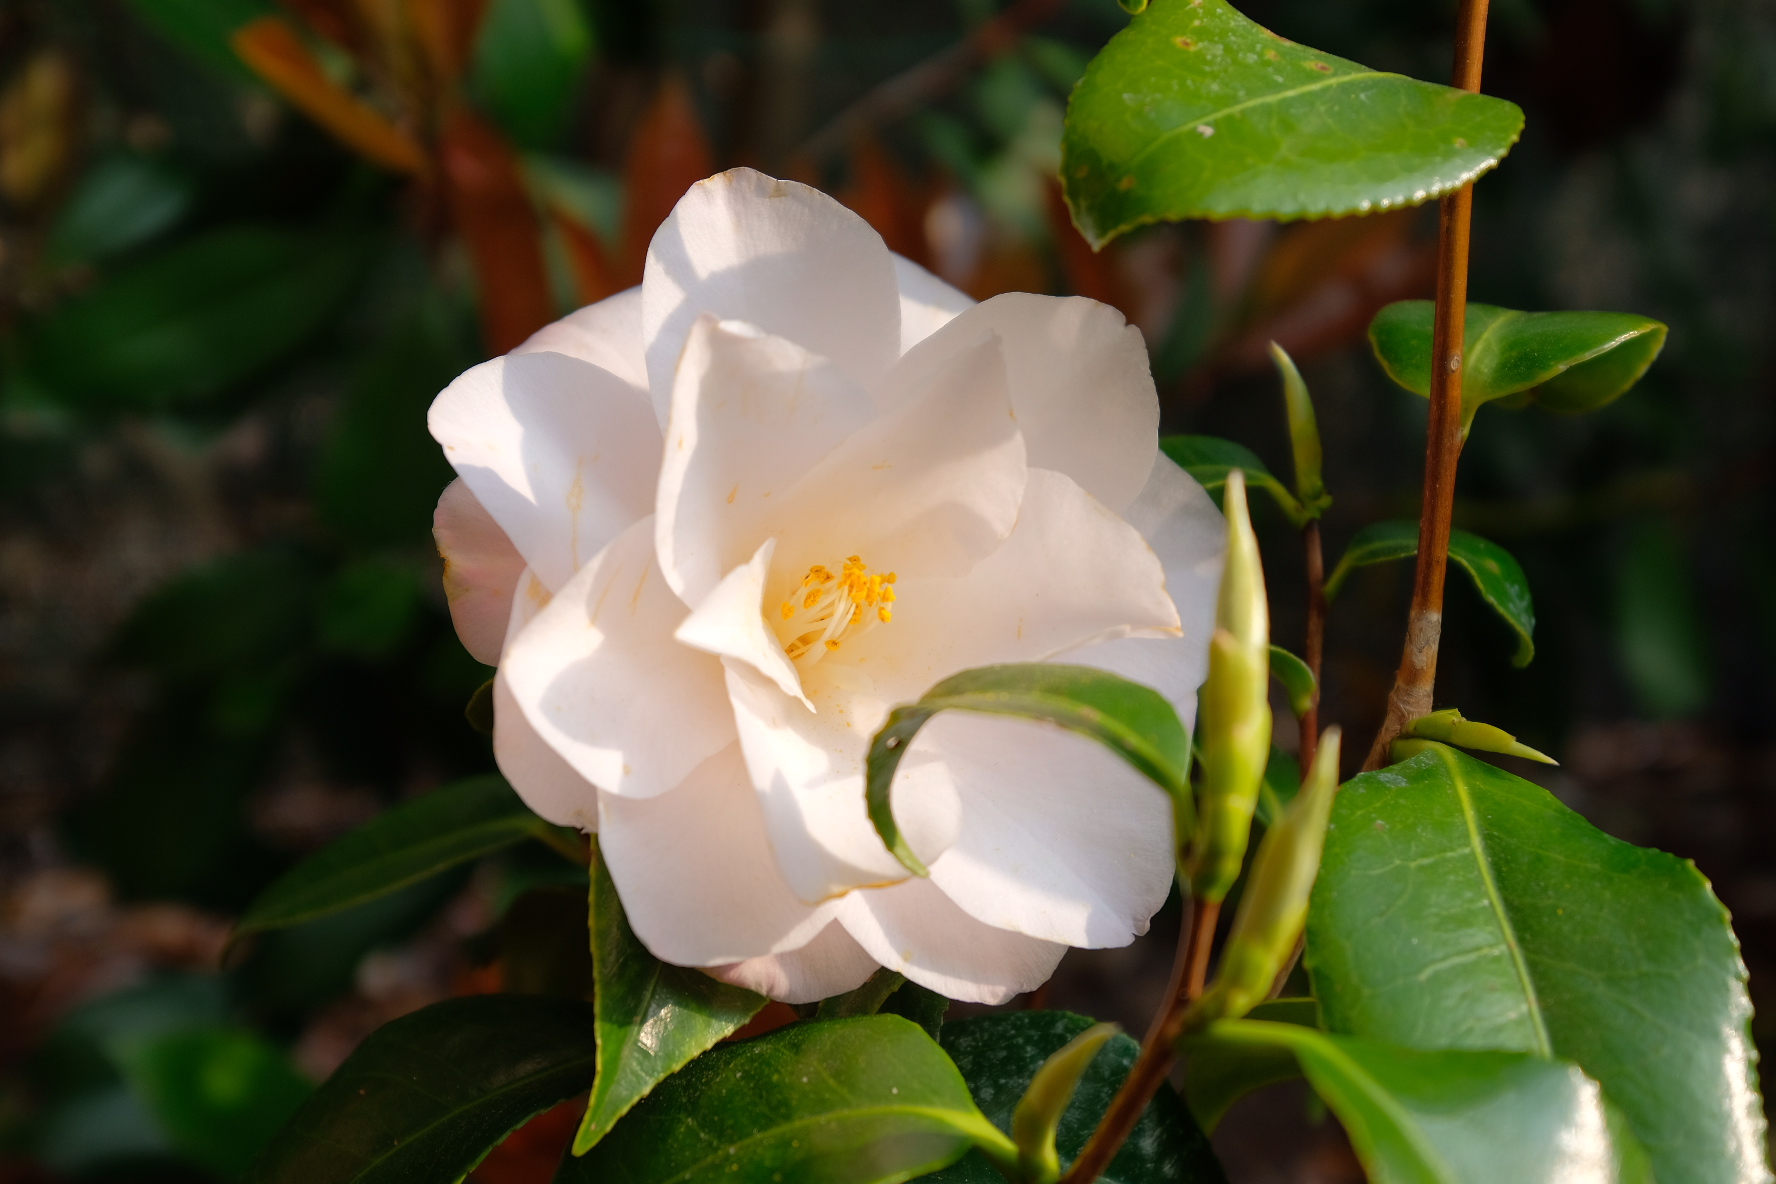 White Camellia...